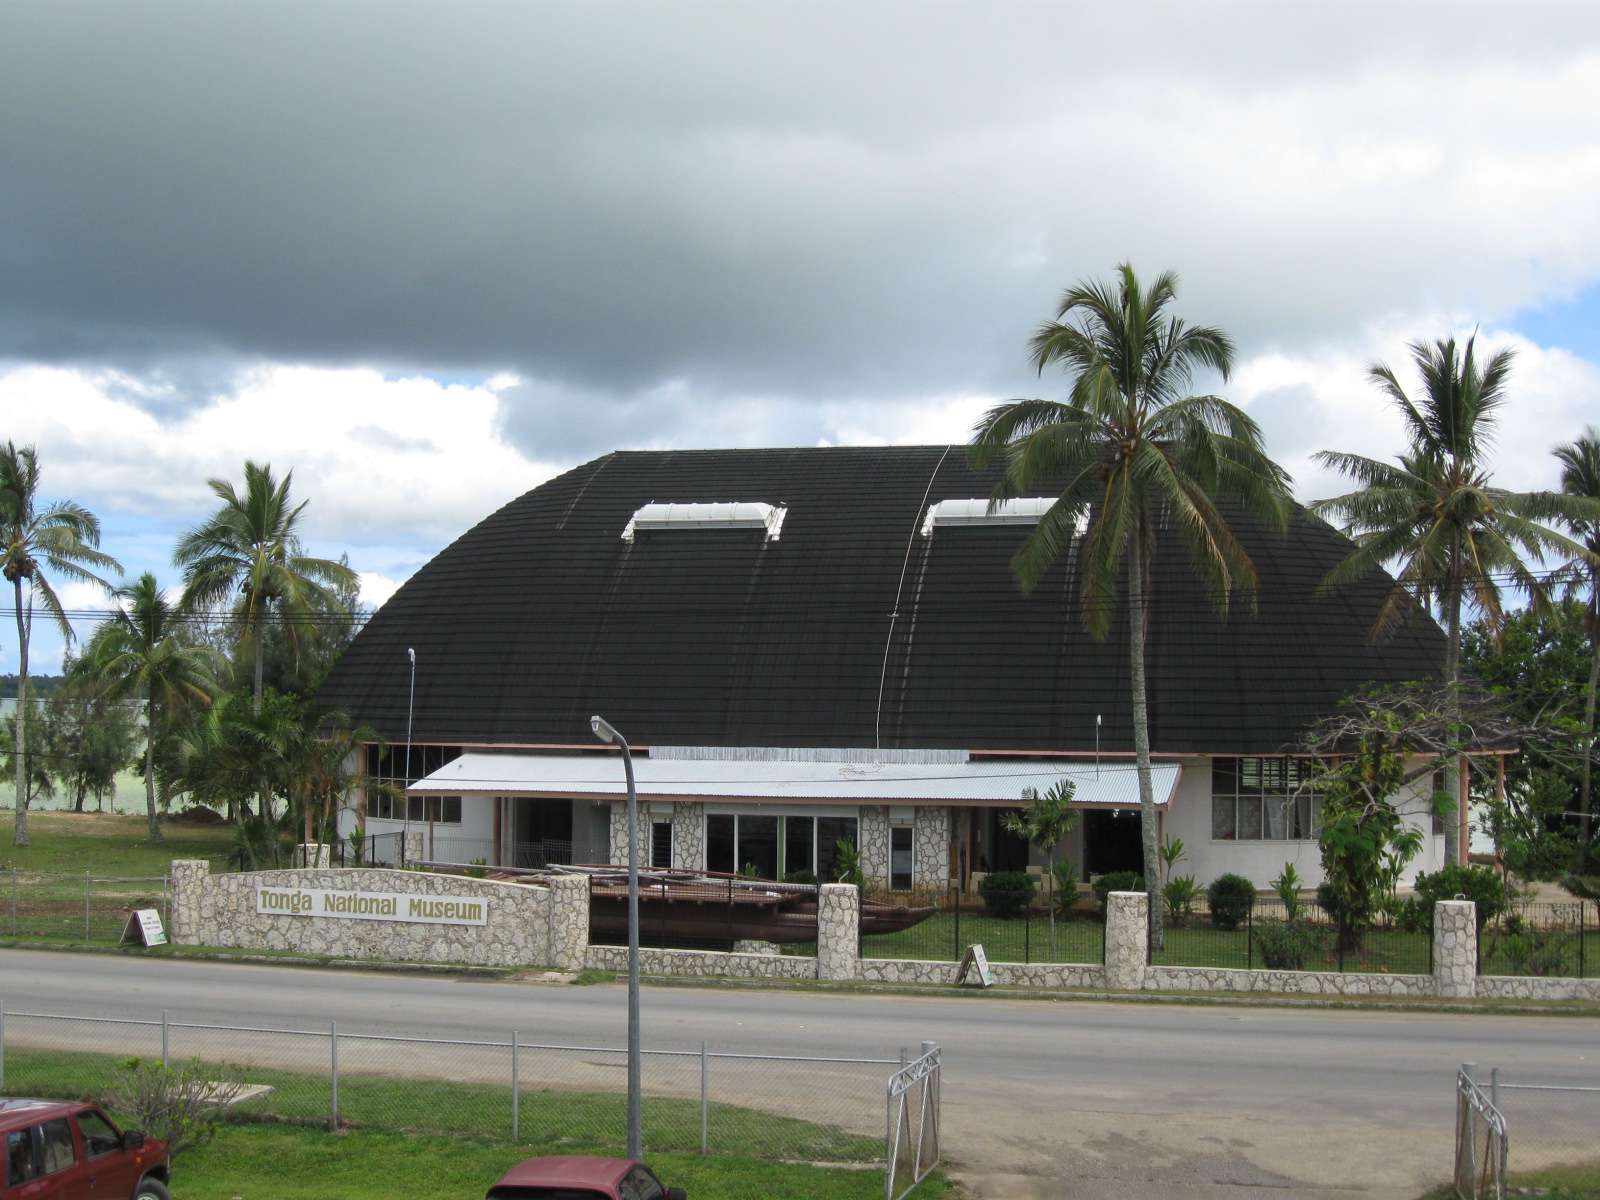 東加國家博物館 Tonga National Museum